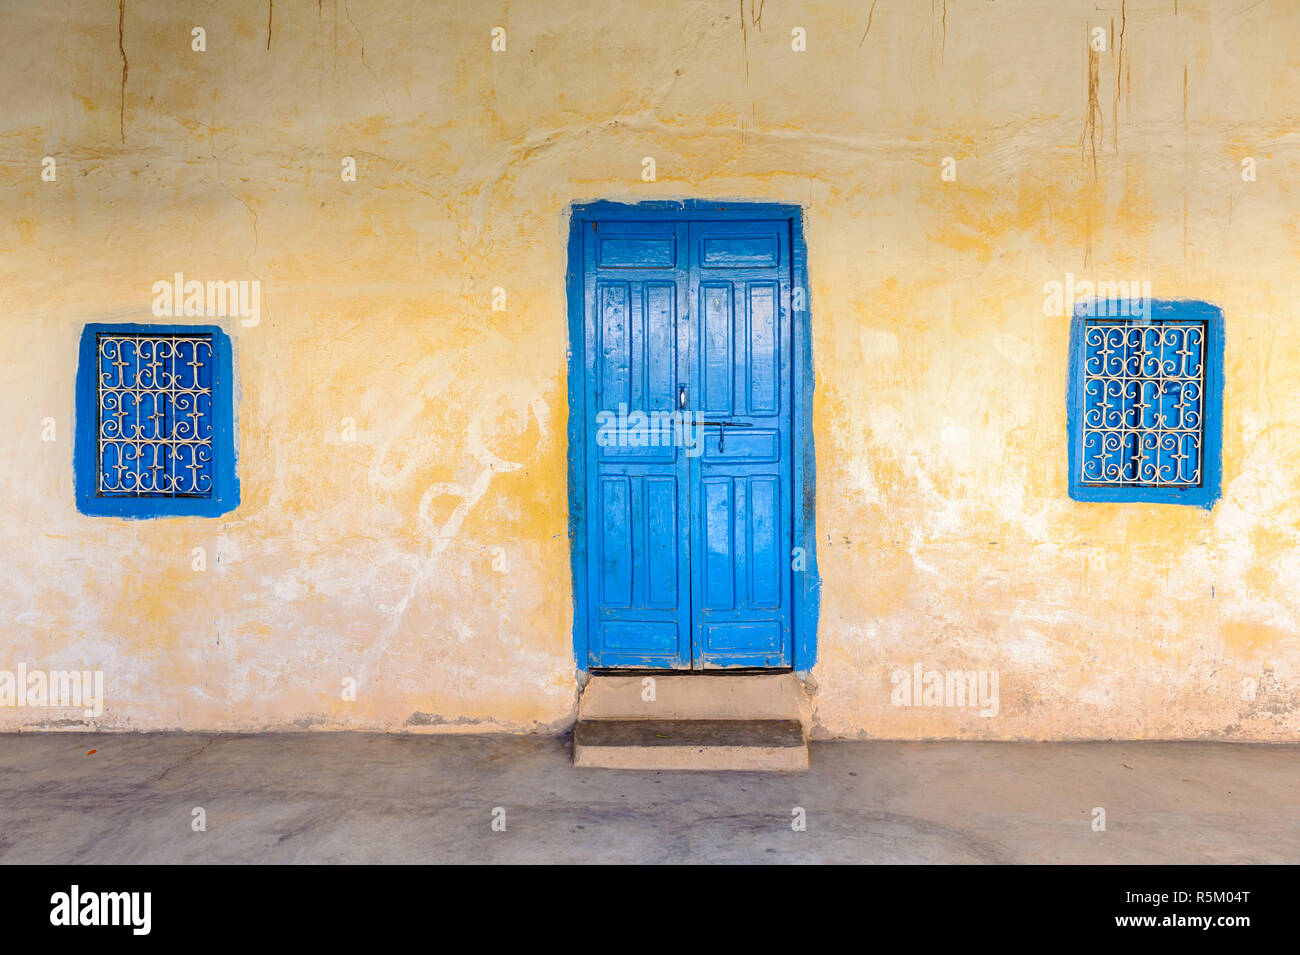 01-03-15, Marrakech, Marocco. Tipico vecchio blu di porte e finestre di una casa in sub-Atlas regione berbera. Foto: ©Simone Grosset Foto Stock